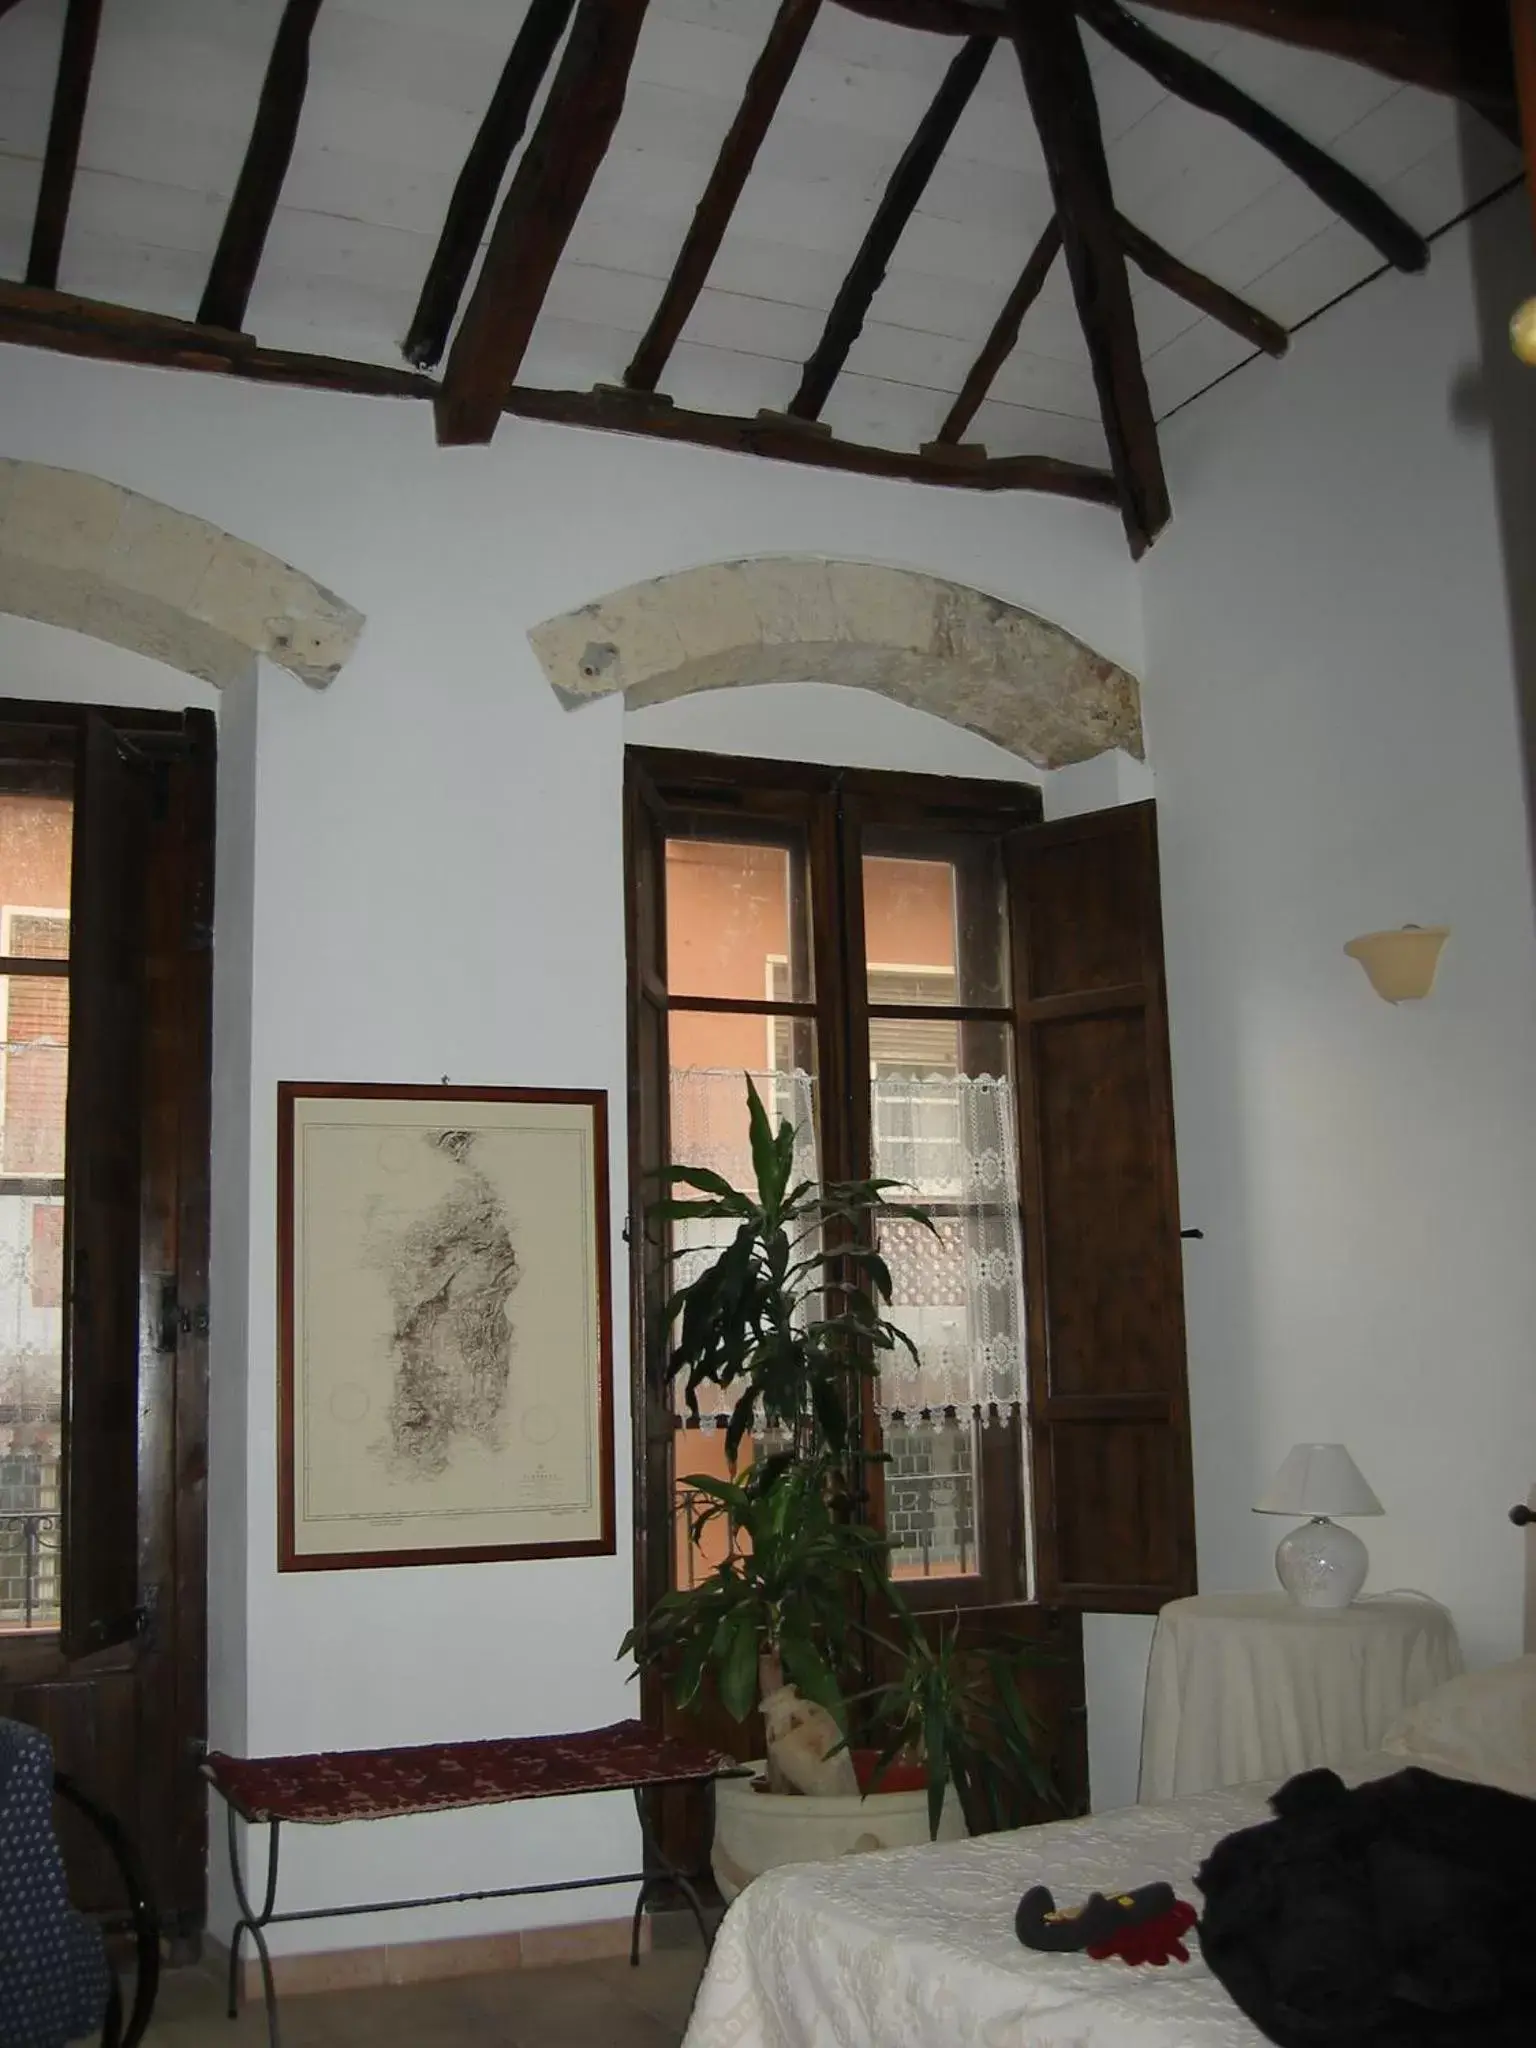 Photo of the whole room in Guest House Il Giardino Segreto